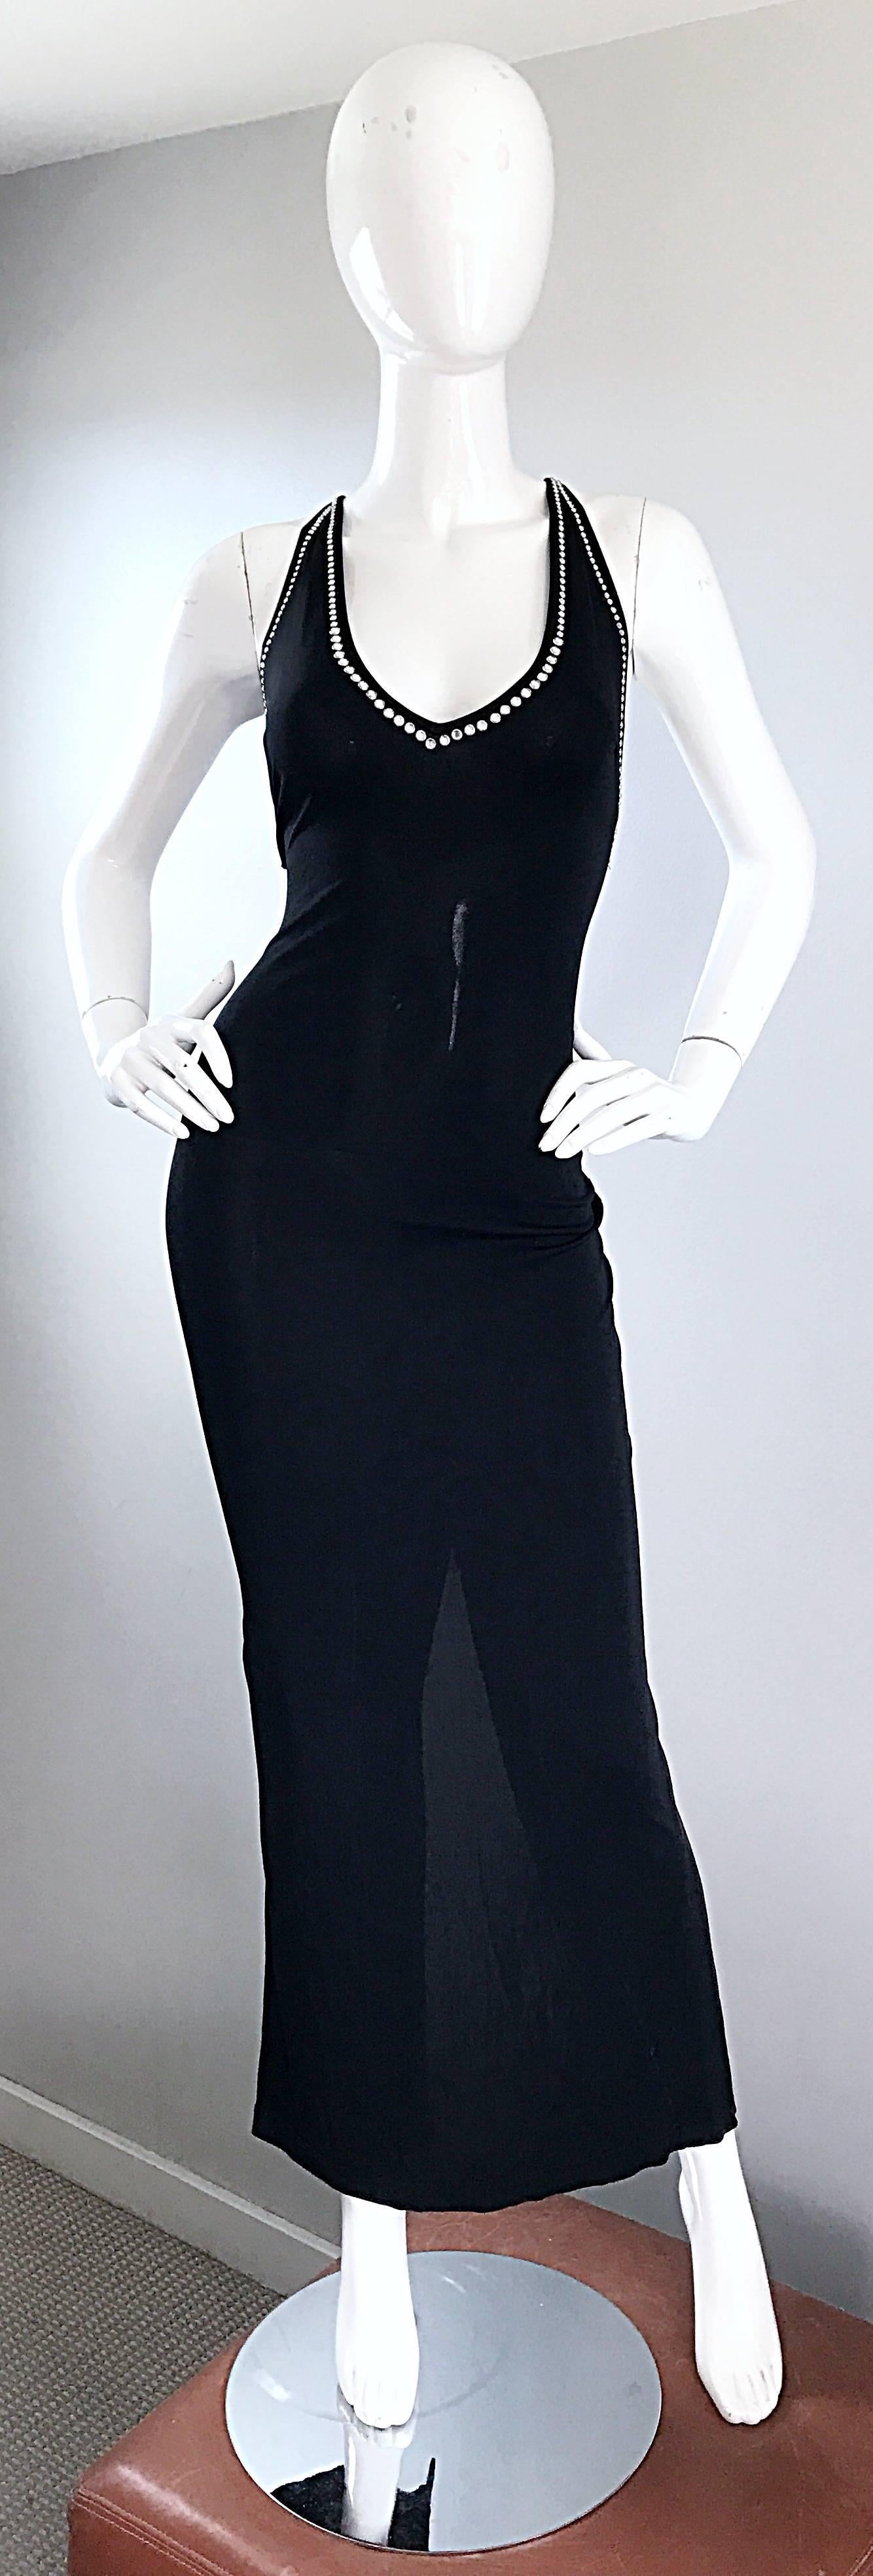 Noir Blumarine Anna Molinari - Robe en jersey vintage sexy et noire avec cristaux cloutés (années 1990) en vente